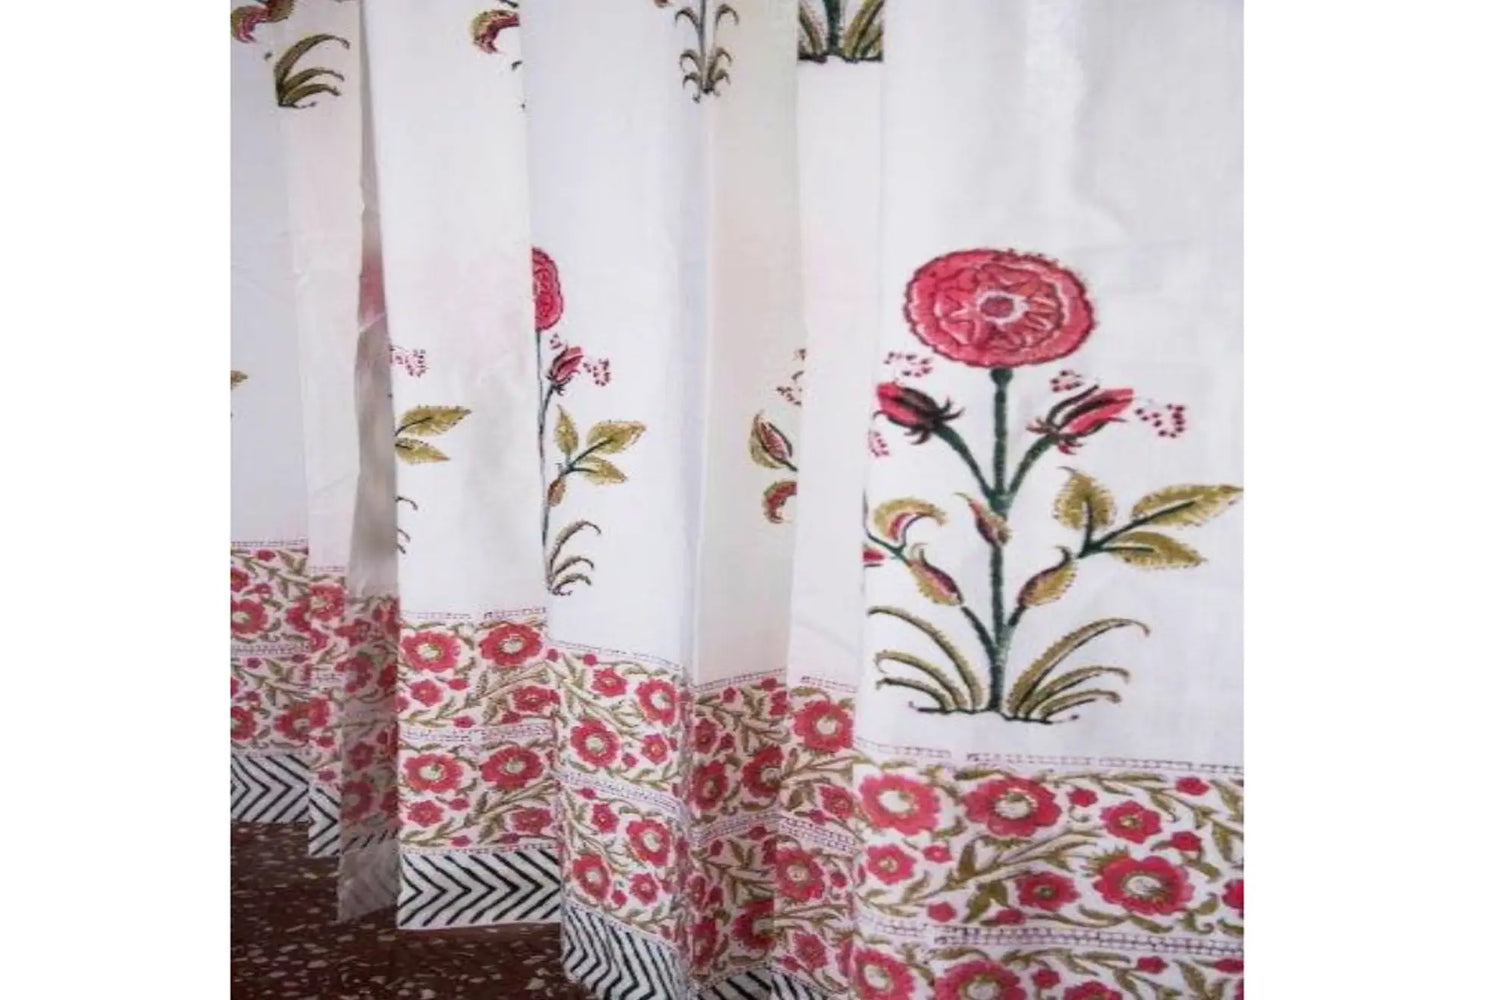 Zahira - Hand Block Printed Curtain